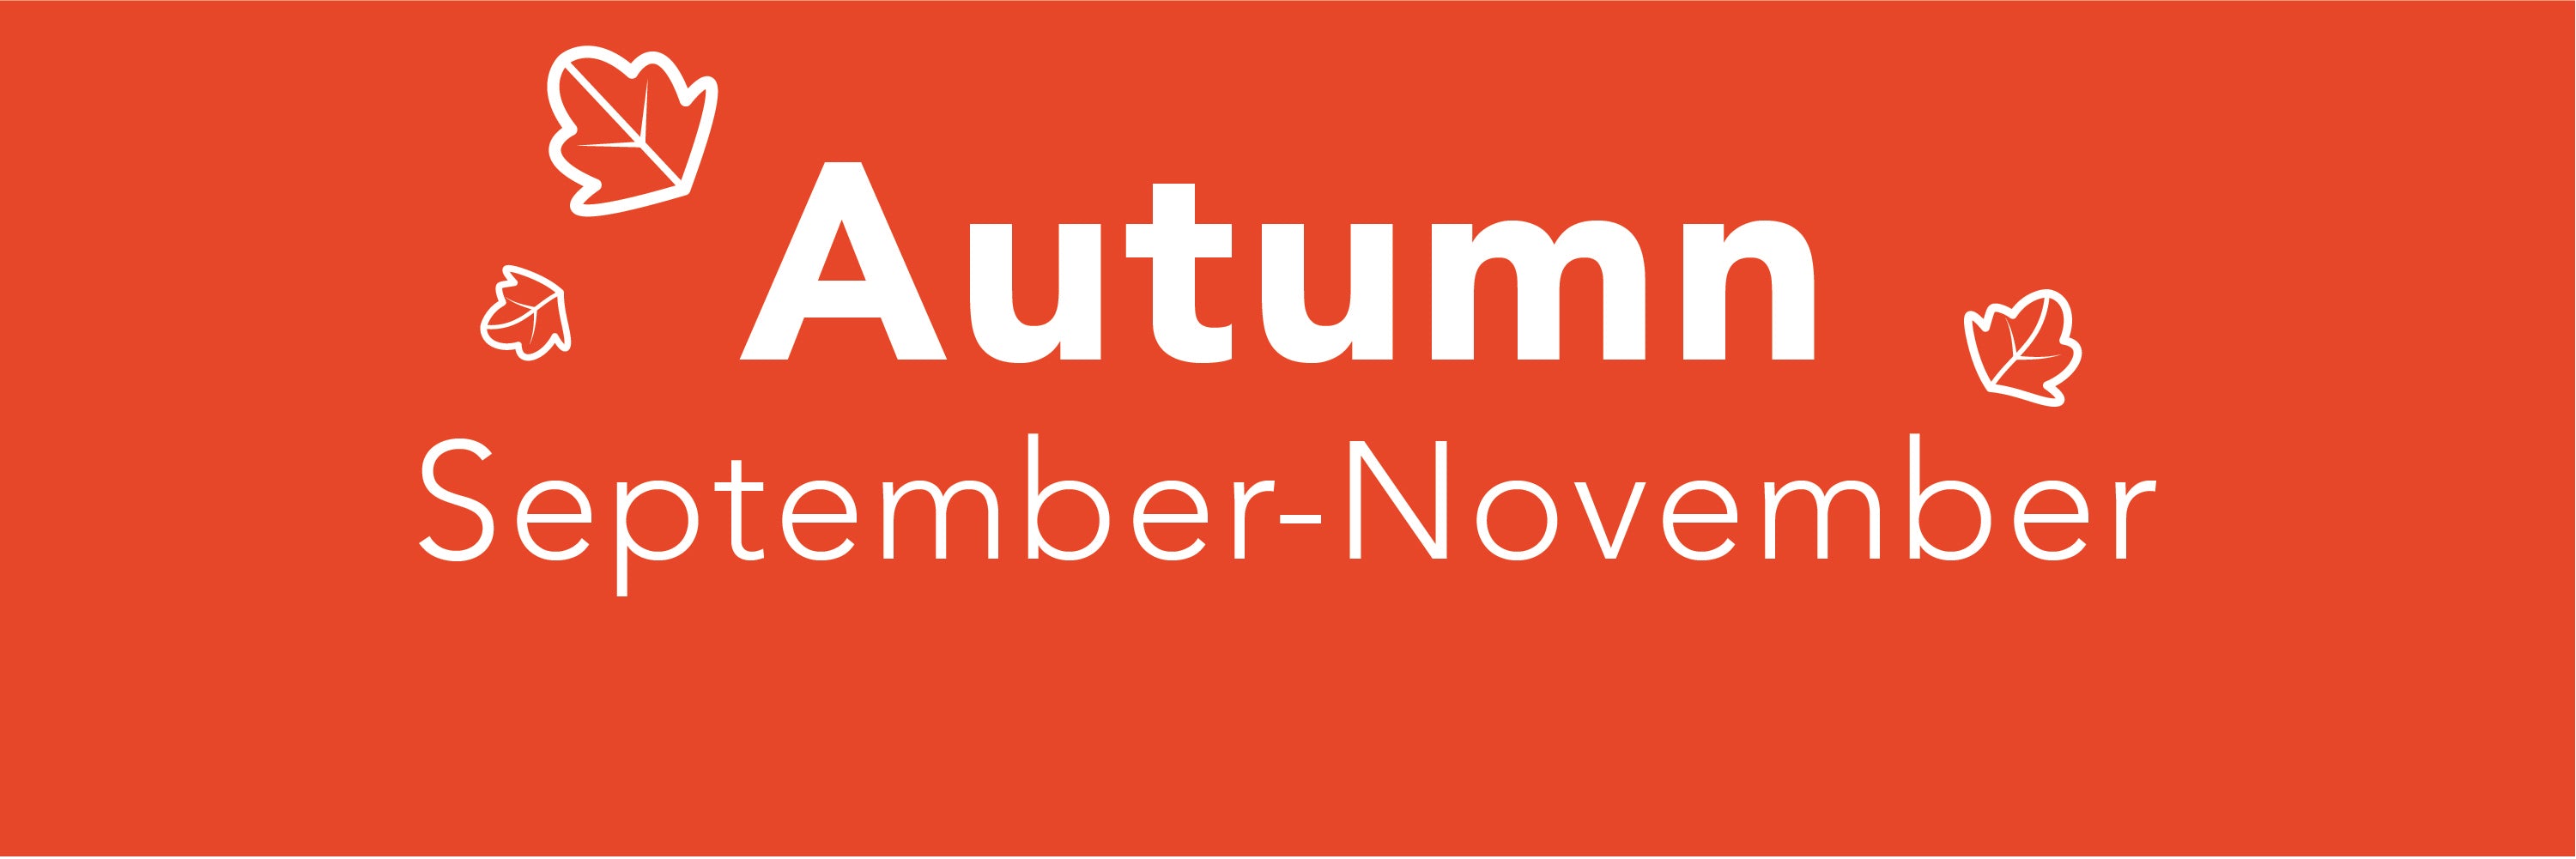 Autumn (September-November)